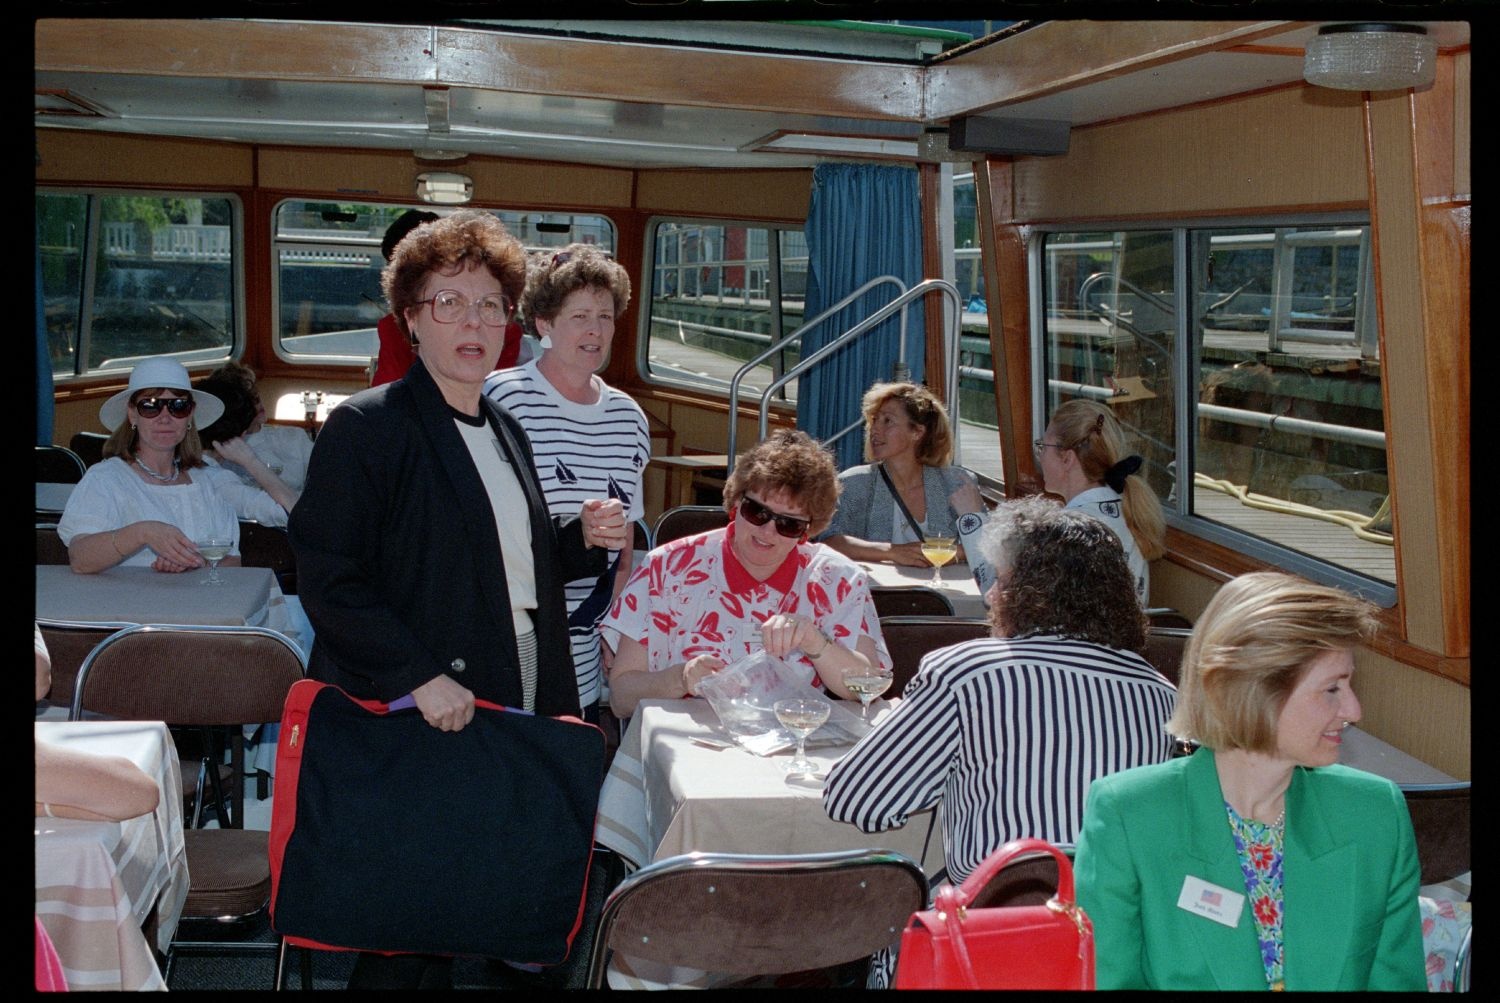 Fotografie: "Allied Wives Meeting", Ausflug mit dem Schiff für Ehefrauen der britischen, französischen und US-Community in Berlin-Wannsee (AlliiertenMuseum/U.S. Army Photograph Public Domain Mark)